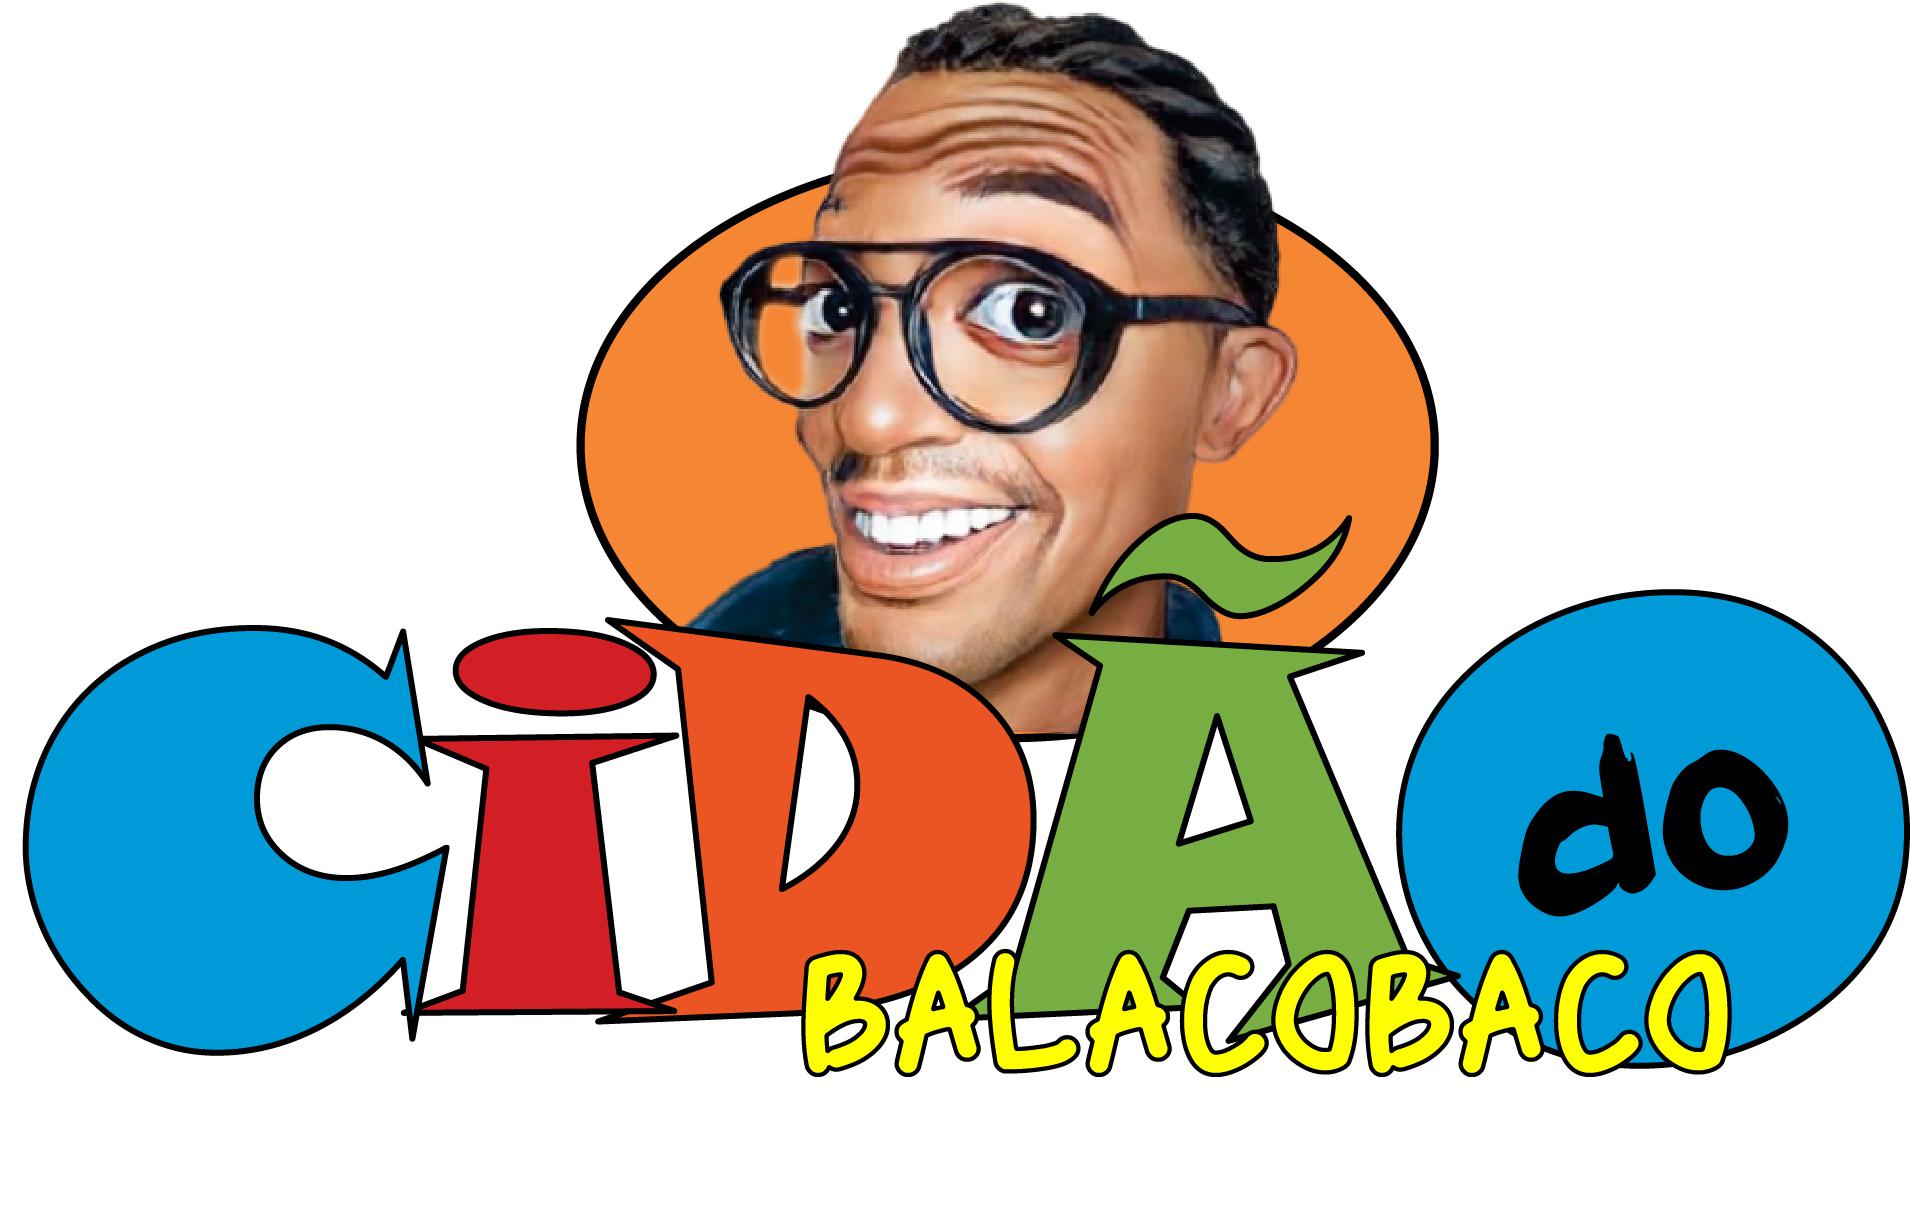 Cidão do Balacobaco Logo